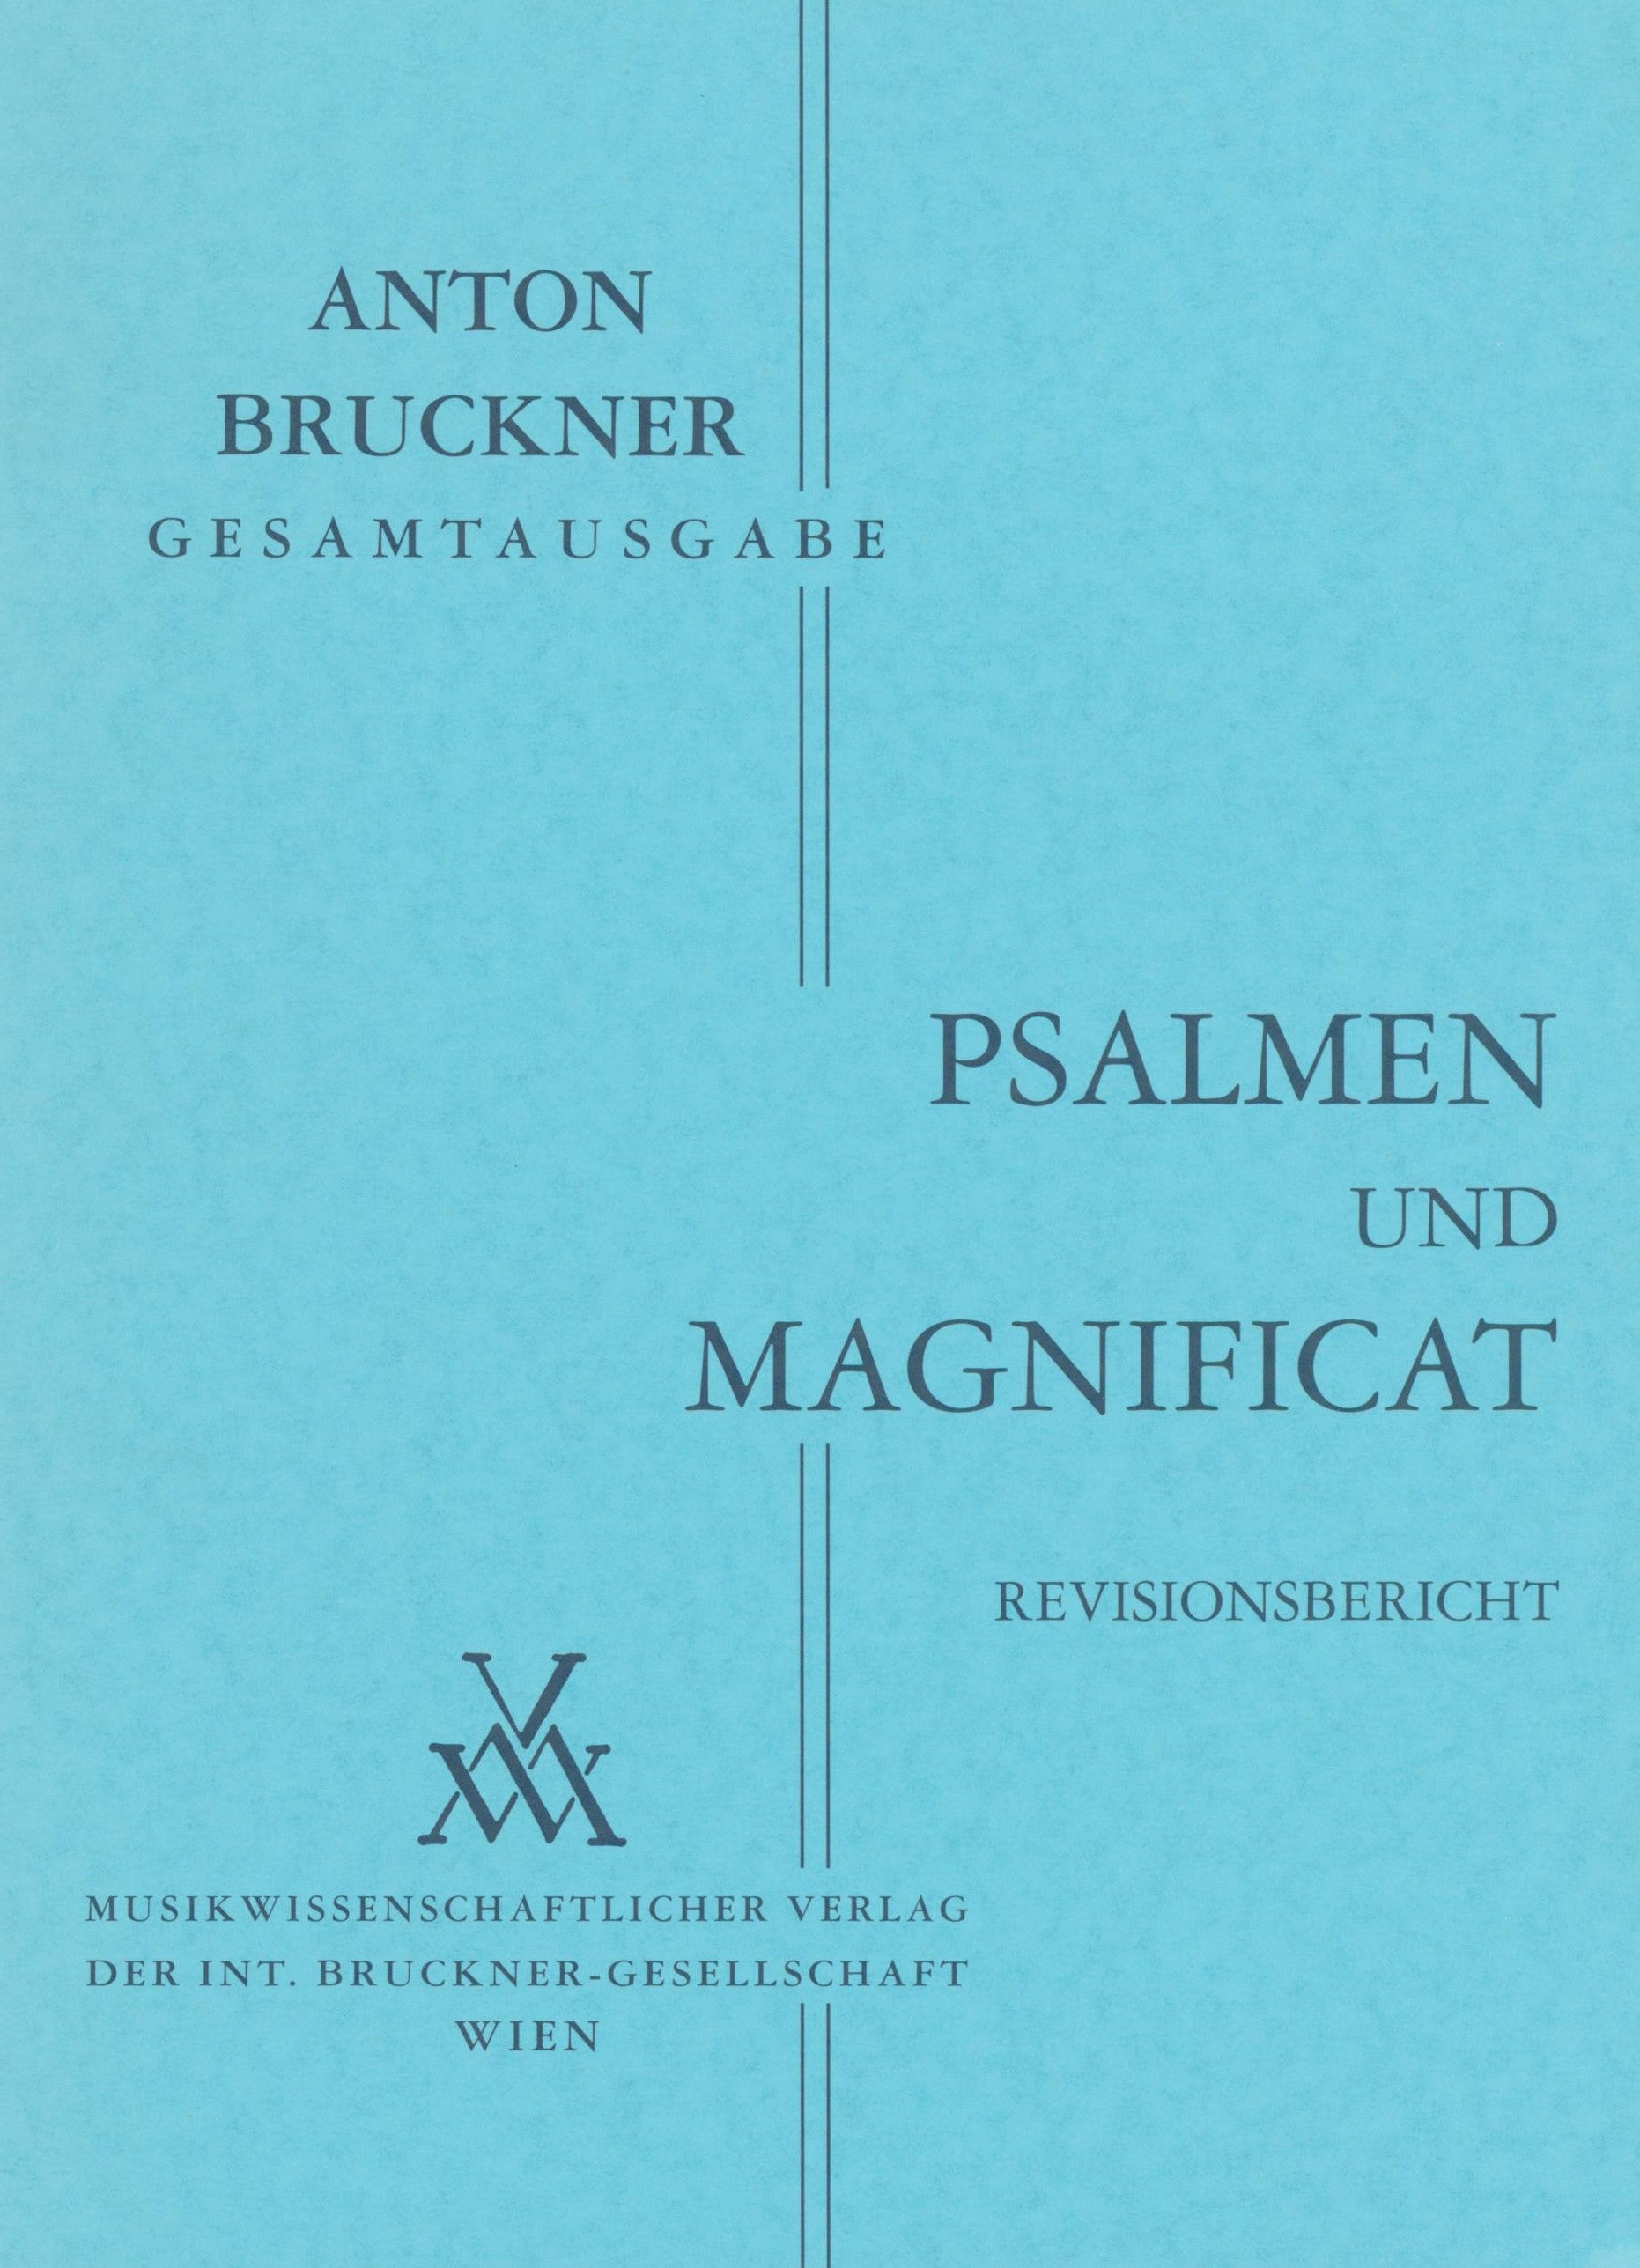 Psalmen and Magnificat